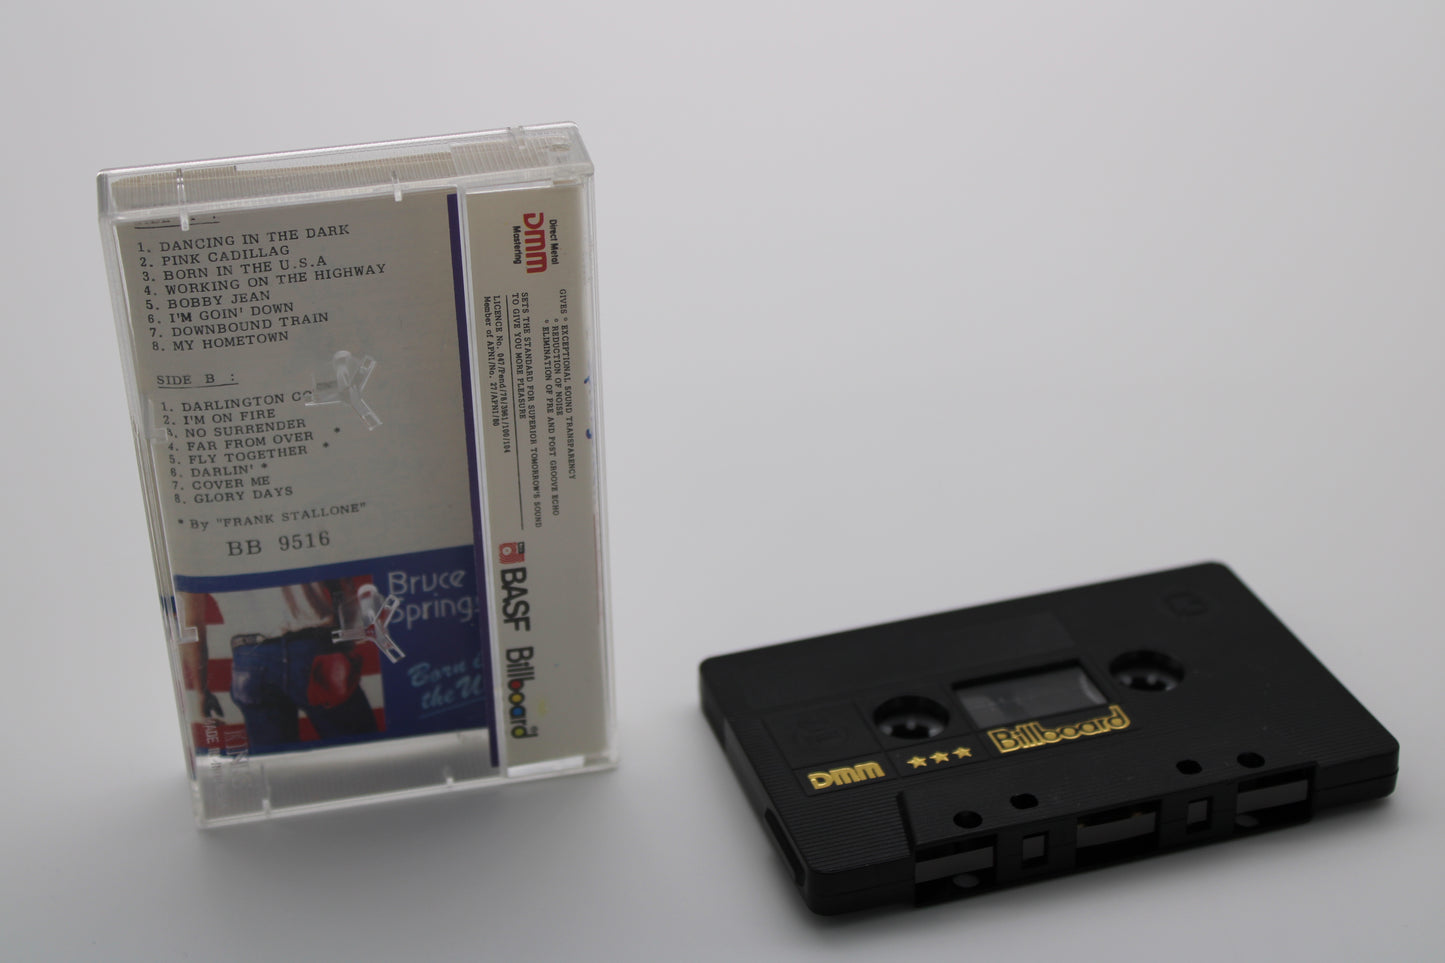 Bruce Springsteen - Born in the USA Cassette Tape - Billboard Collection - Memorabilia